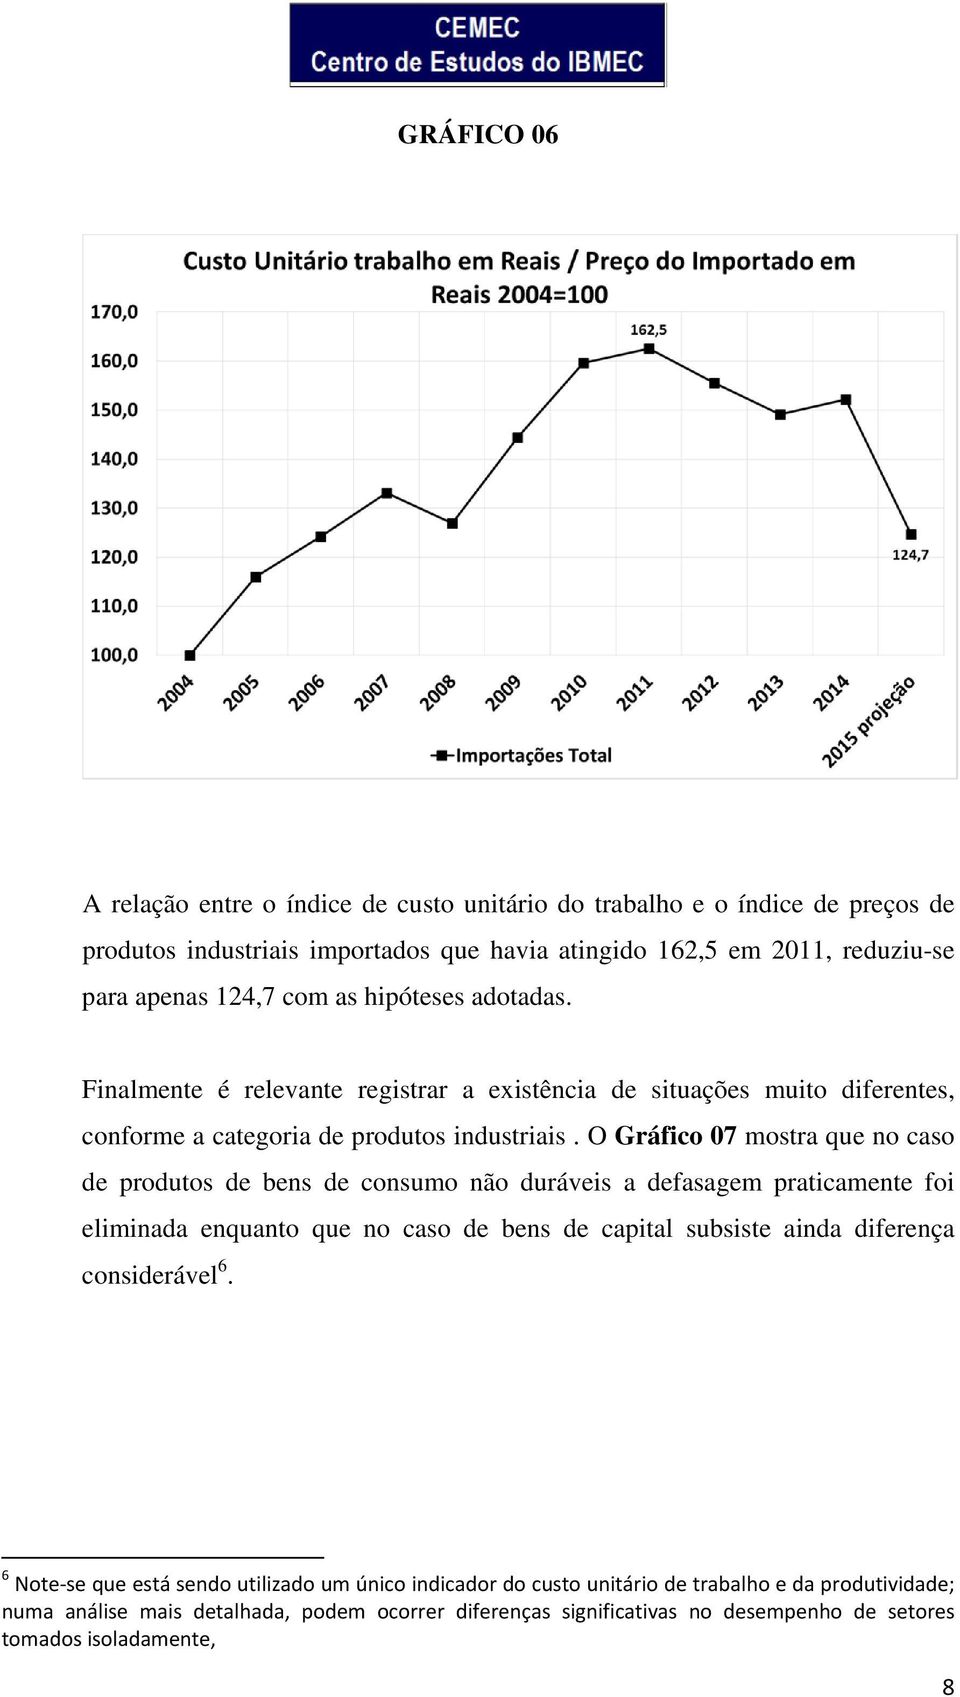 O Gráfico 07 mostra que no caso de produtos de bens de consumo não duráveis a defasagem praticamente foi eliminada enquanto que no caso de bens de capital subsiste ainda diferença